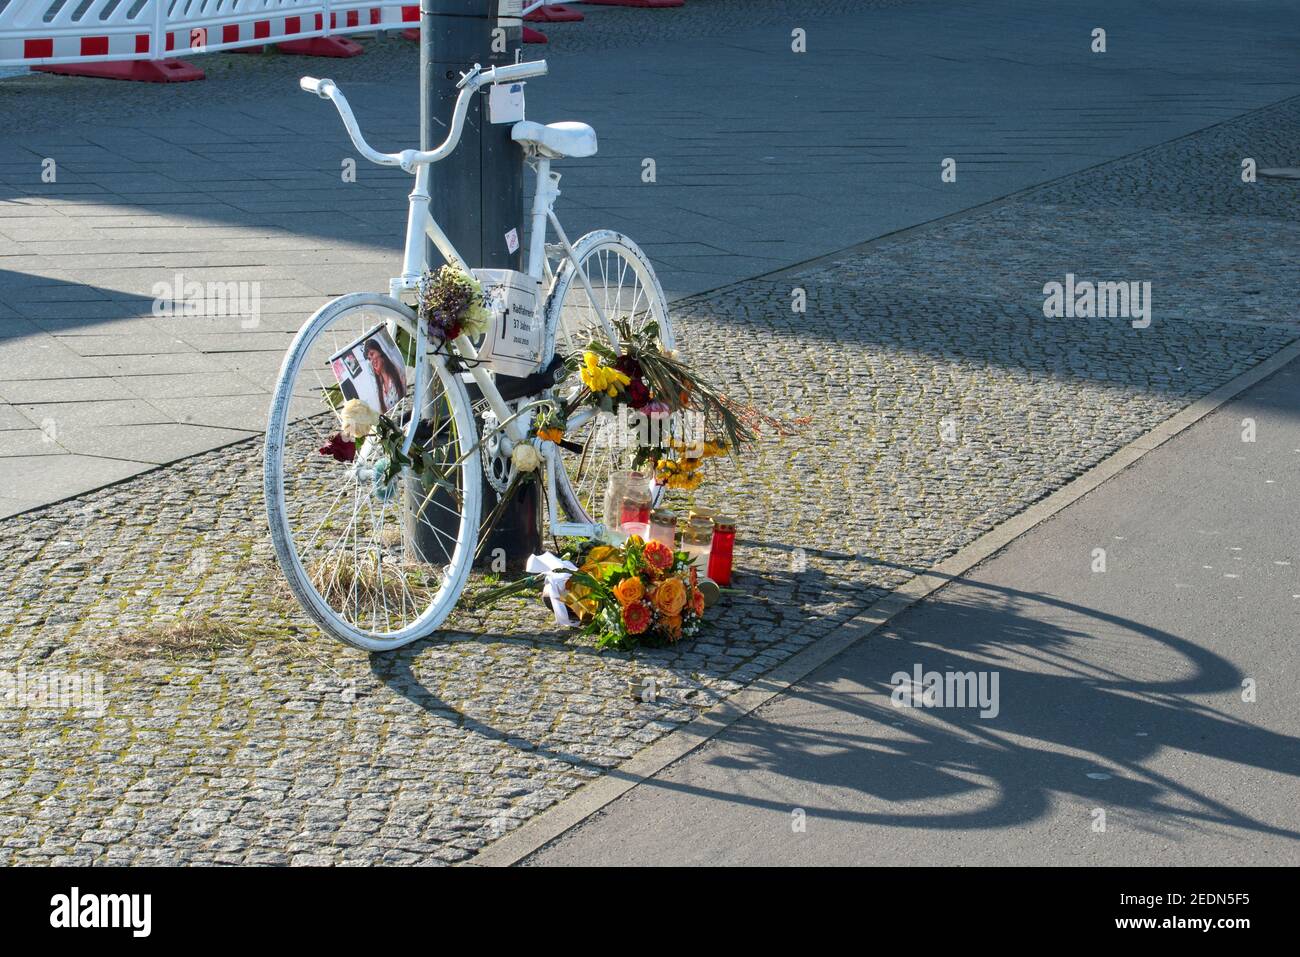 28.02.2019, Berlin, , Allemagne - Berlin-Mitte - Ghost Bike, également appelé Mahnrad ou Geisterrad, sur une rue principale de Berlin. 0CE190228D004CAROEX.JPG [MO Banque D'Images